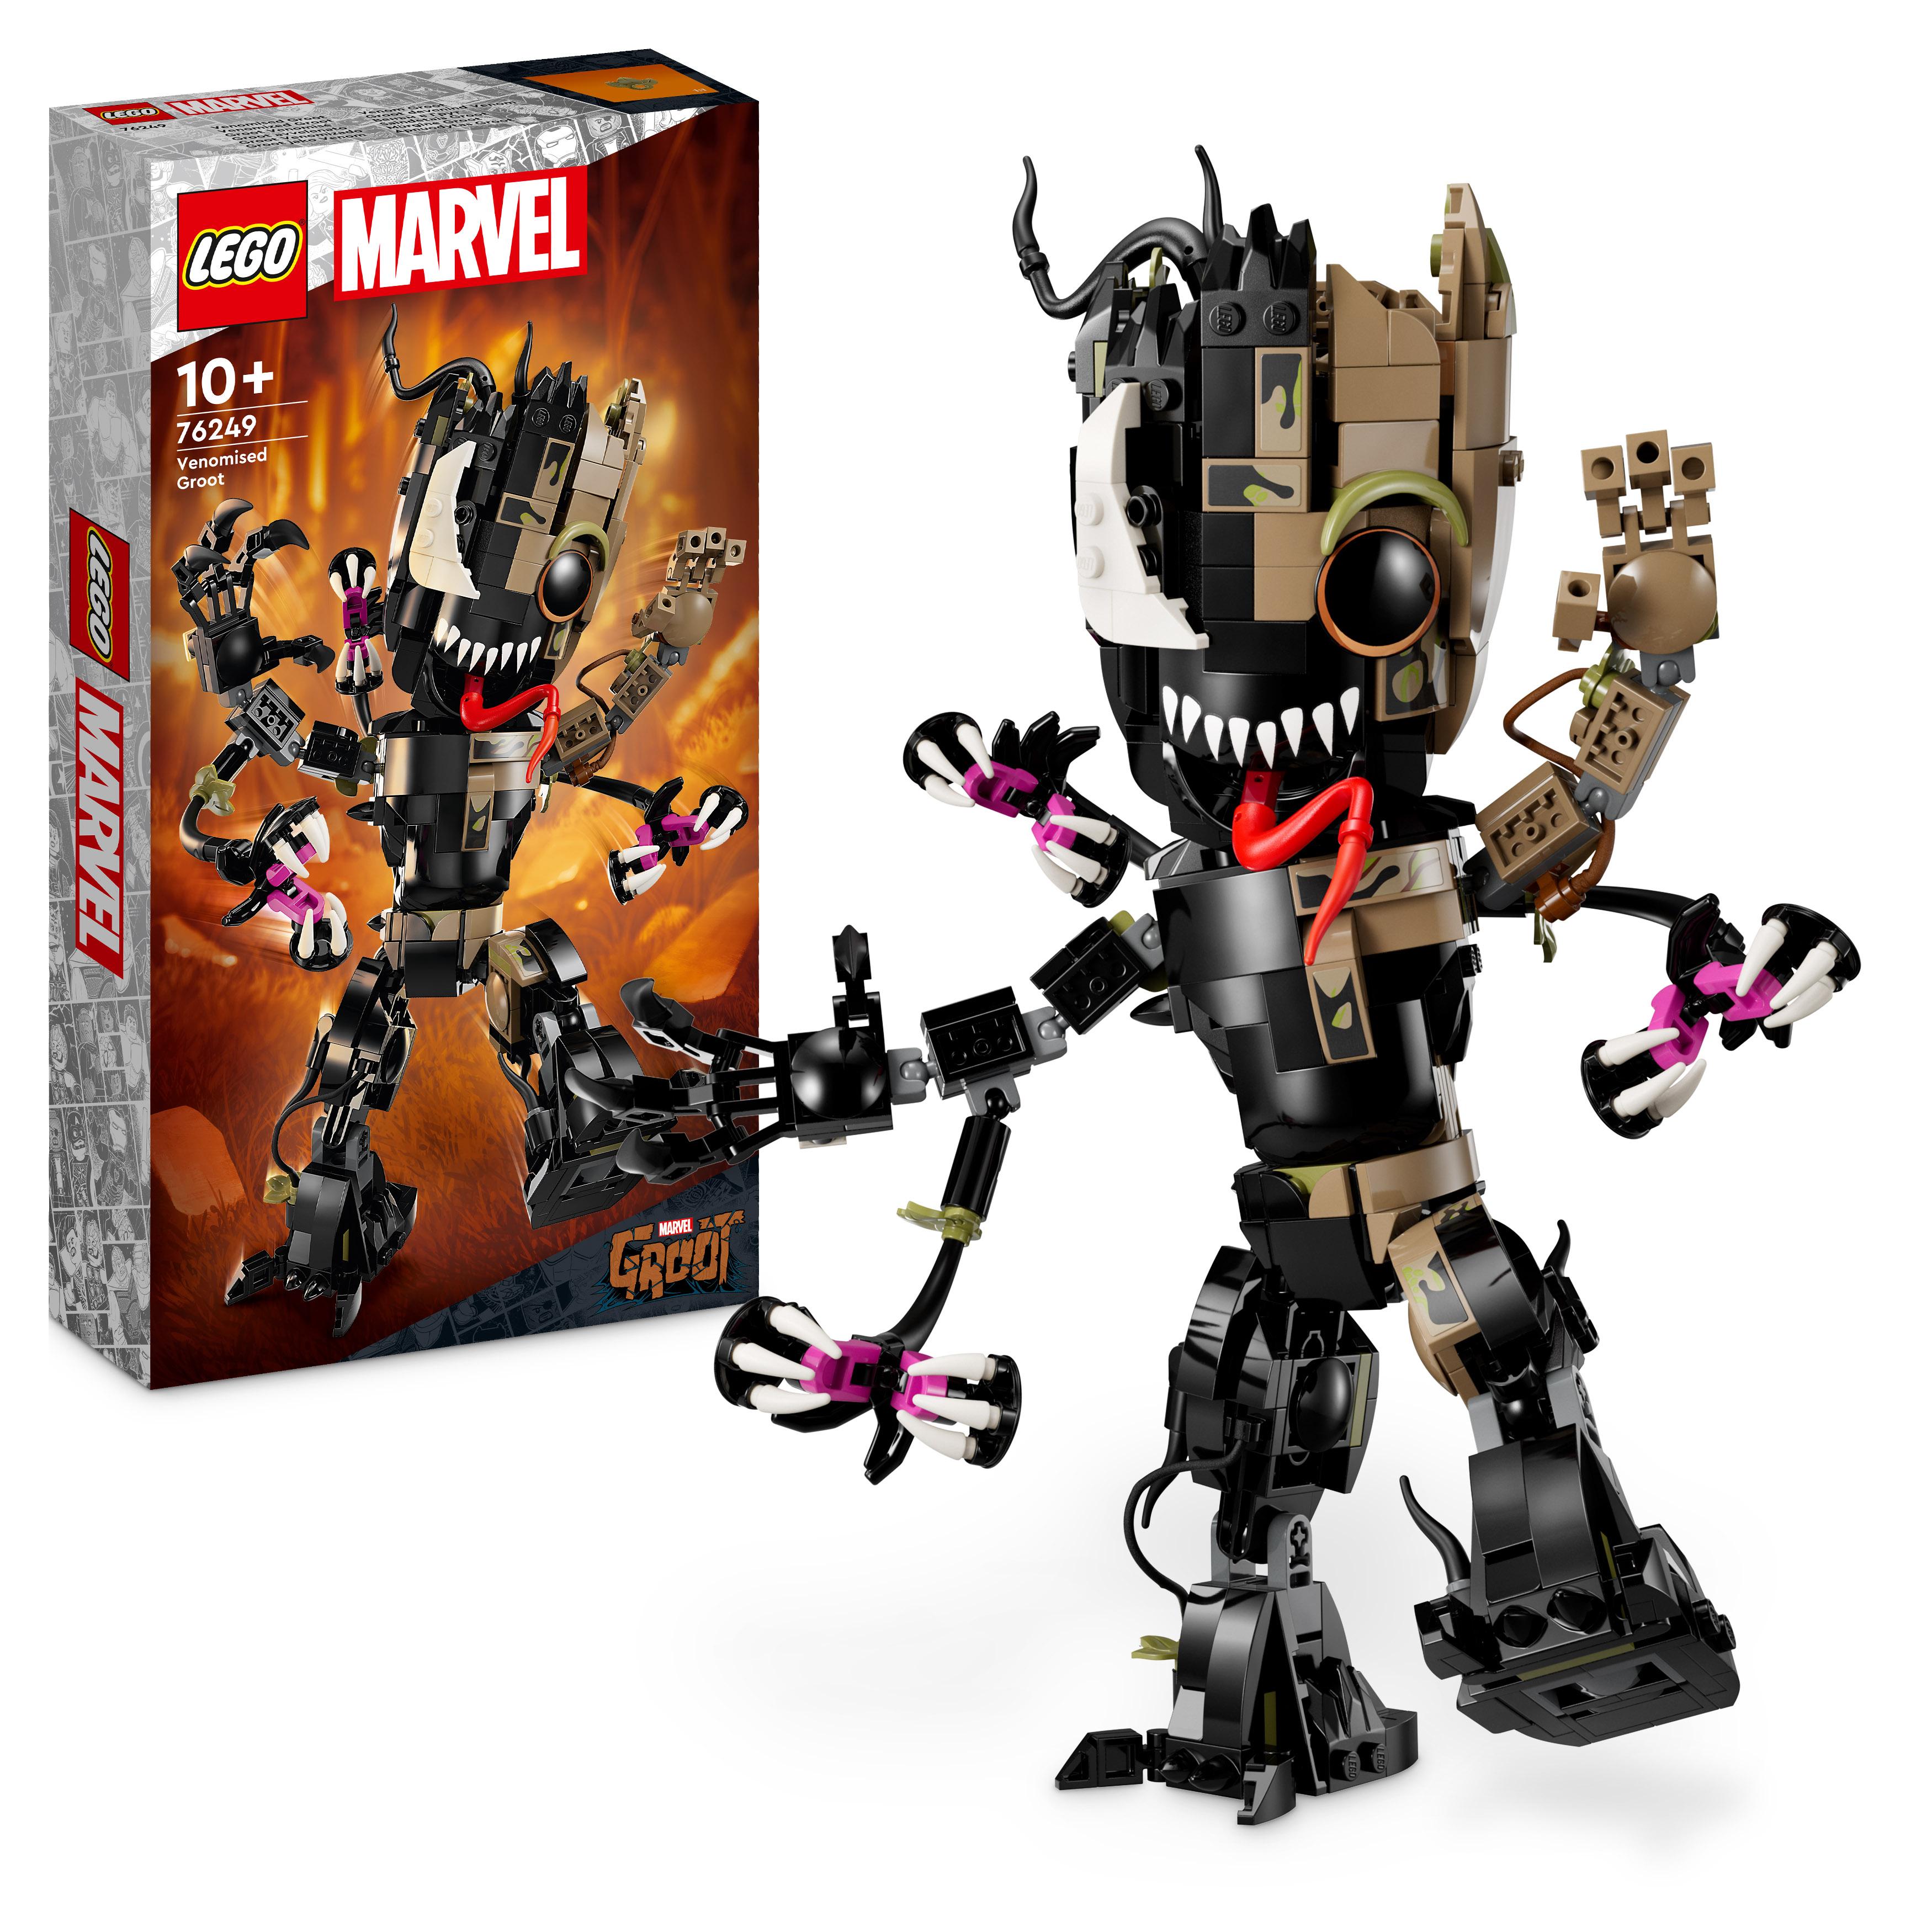 LEGO 76249 Marvel Venomized Groot